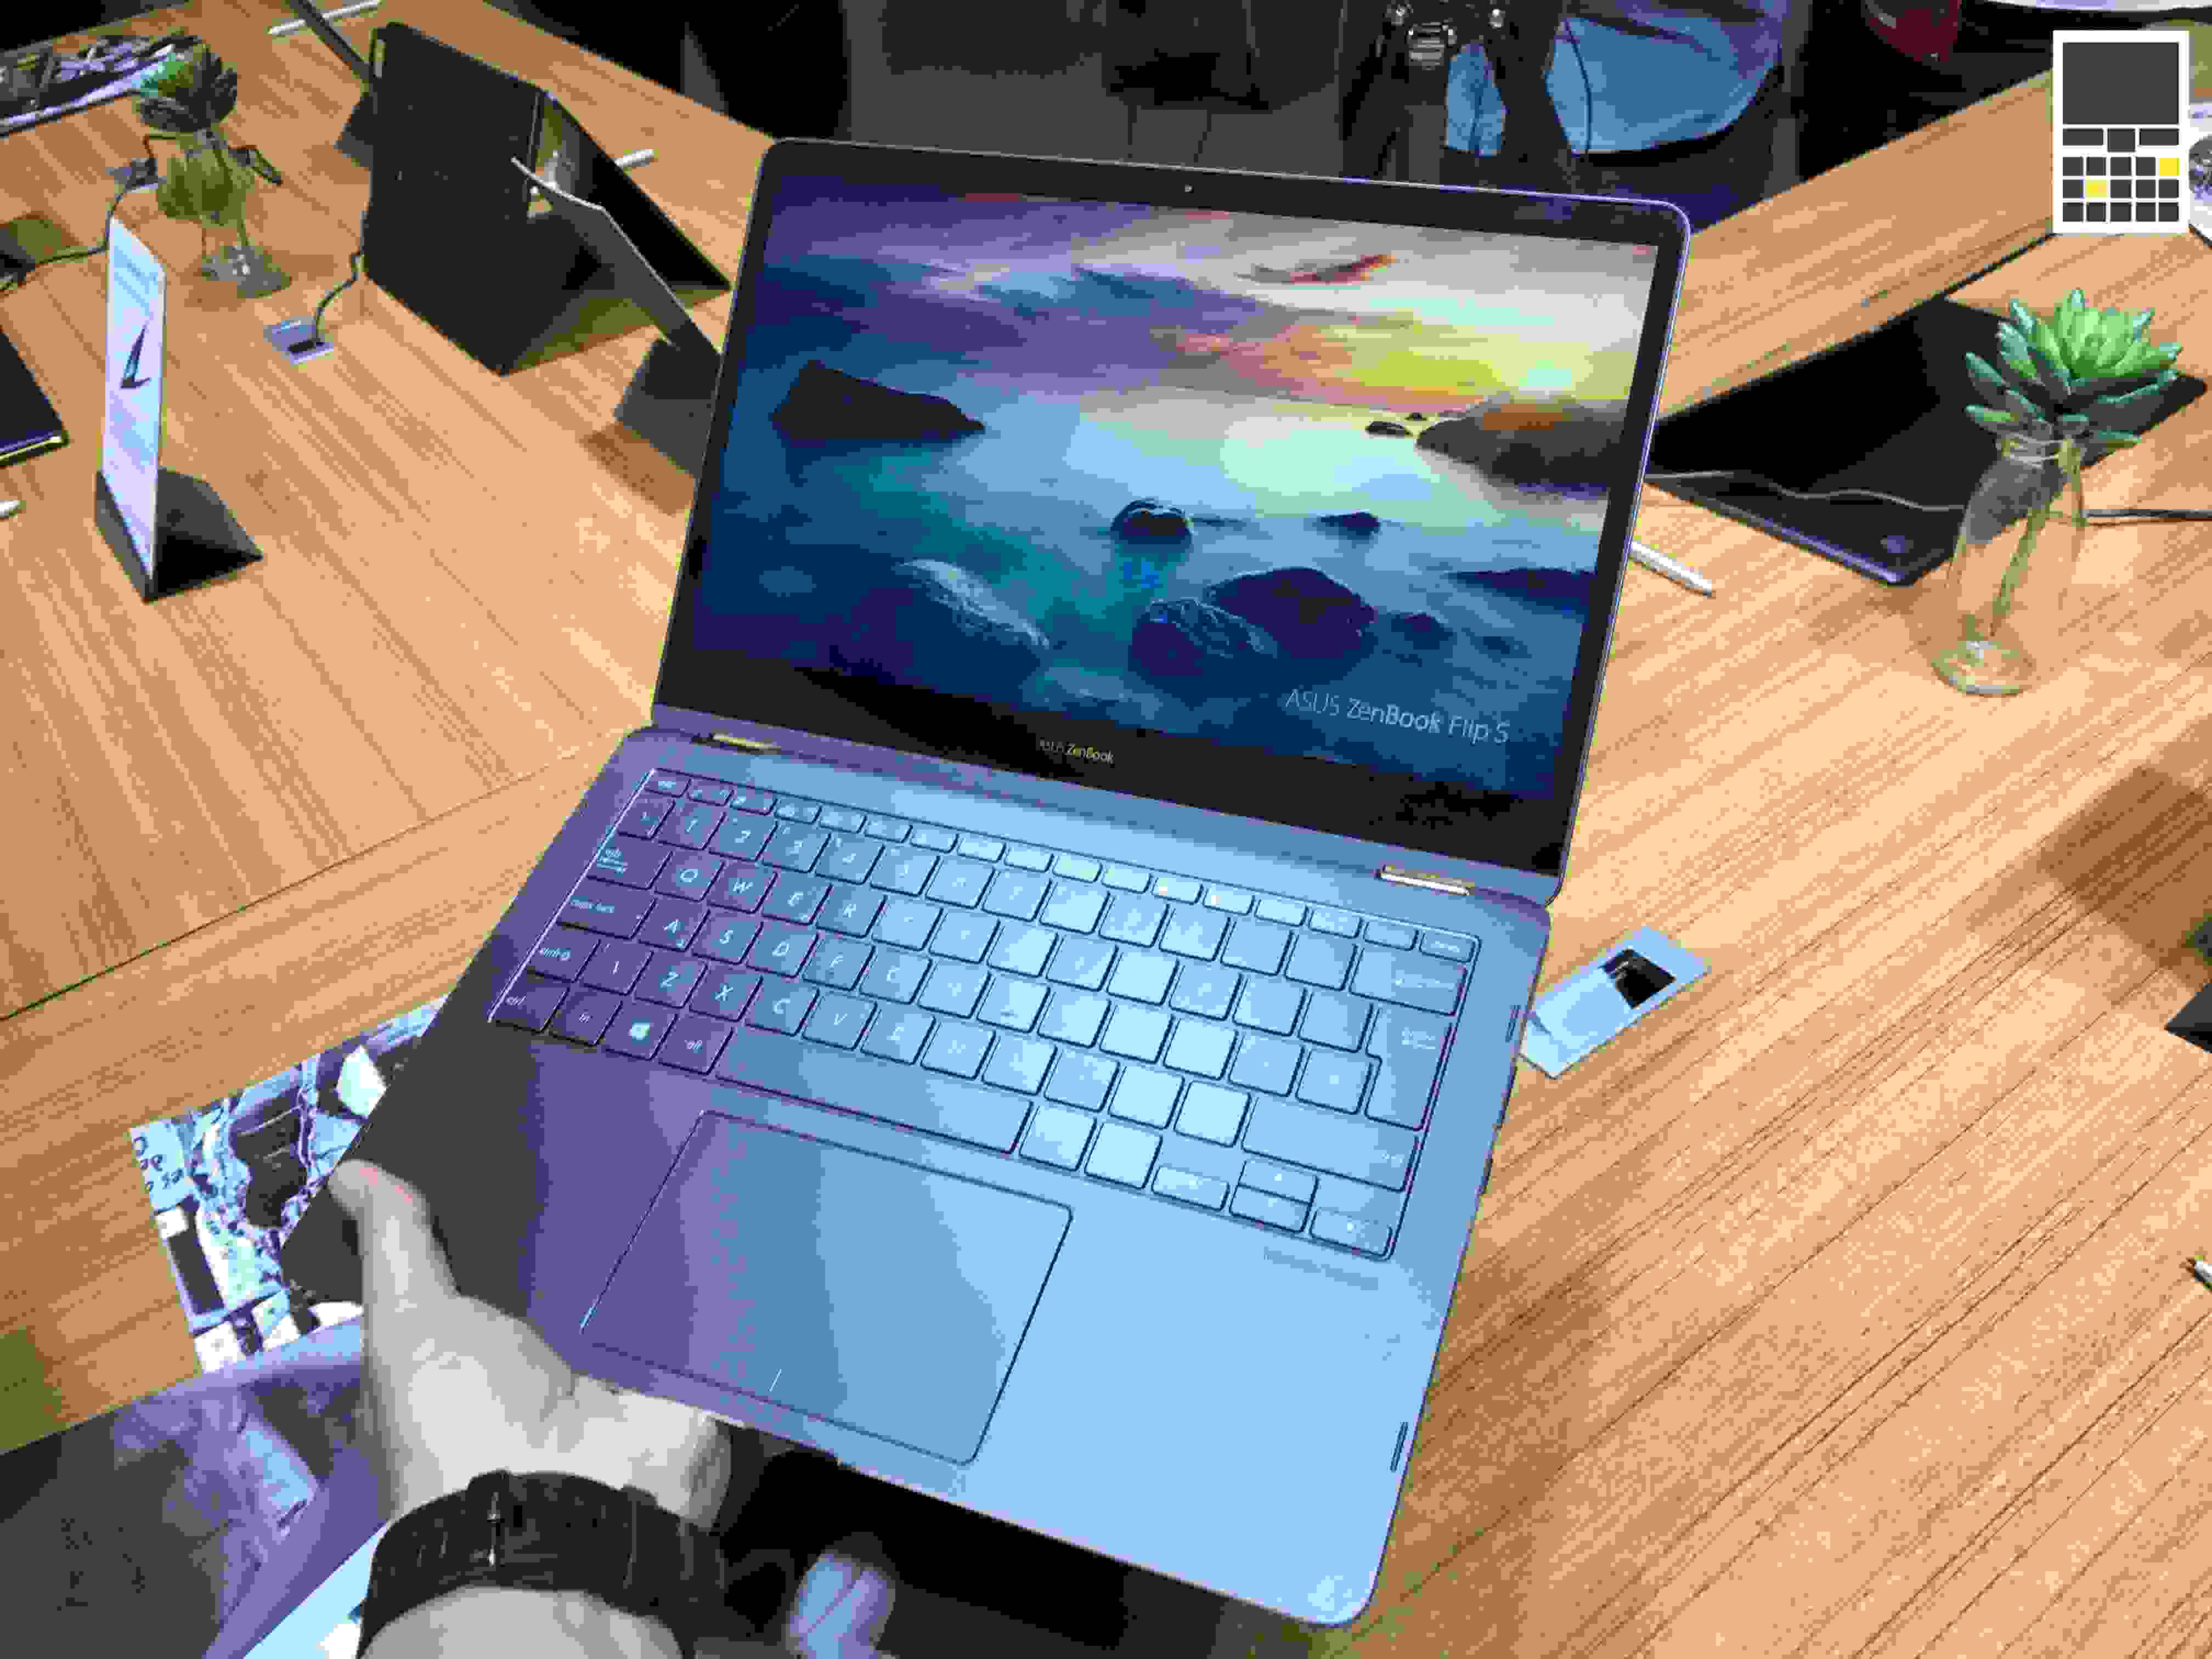 ASUS показала ZenBook Flip S – самый тонкий ноутбук-транформер в мире. ВИДЕО